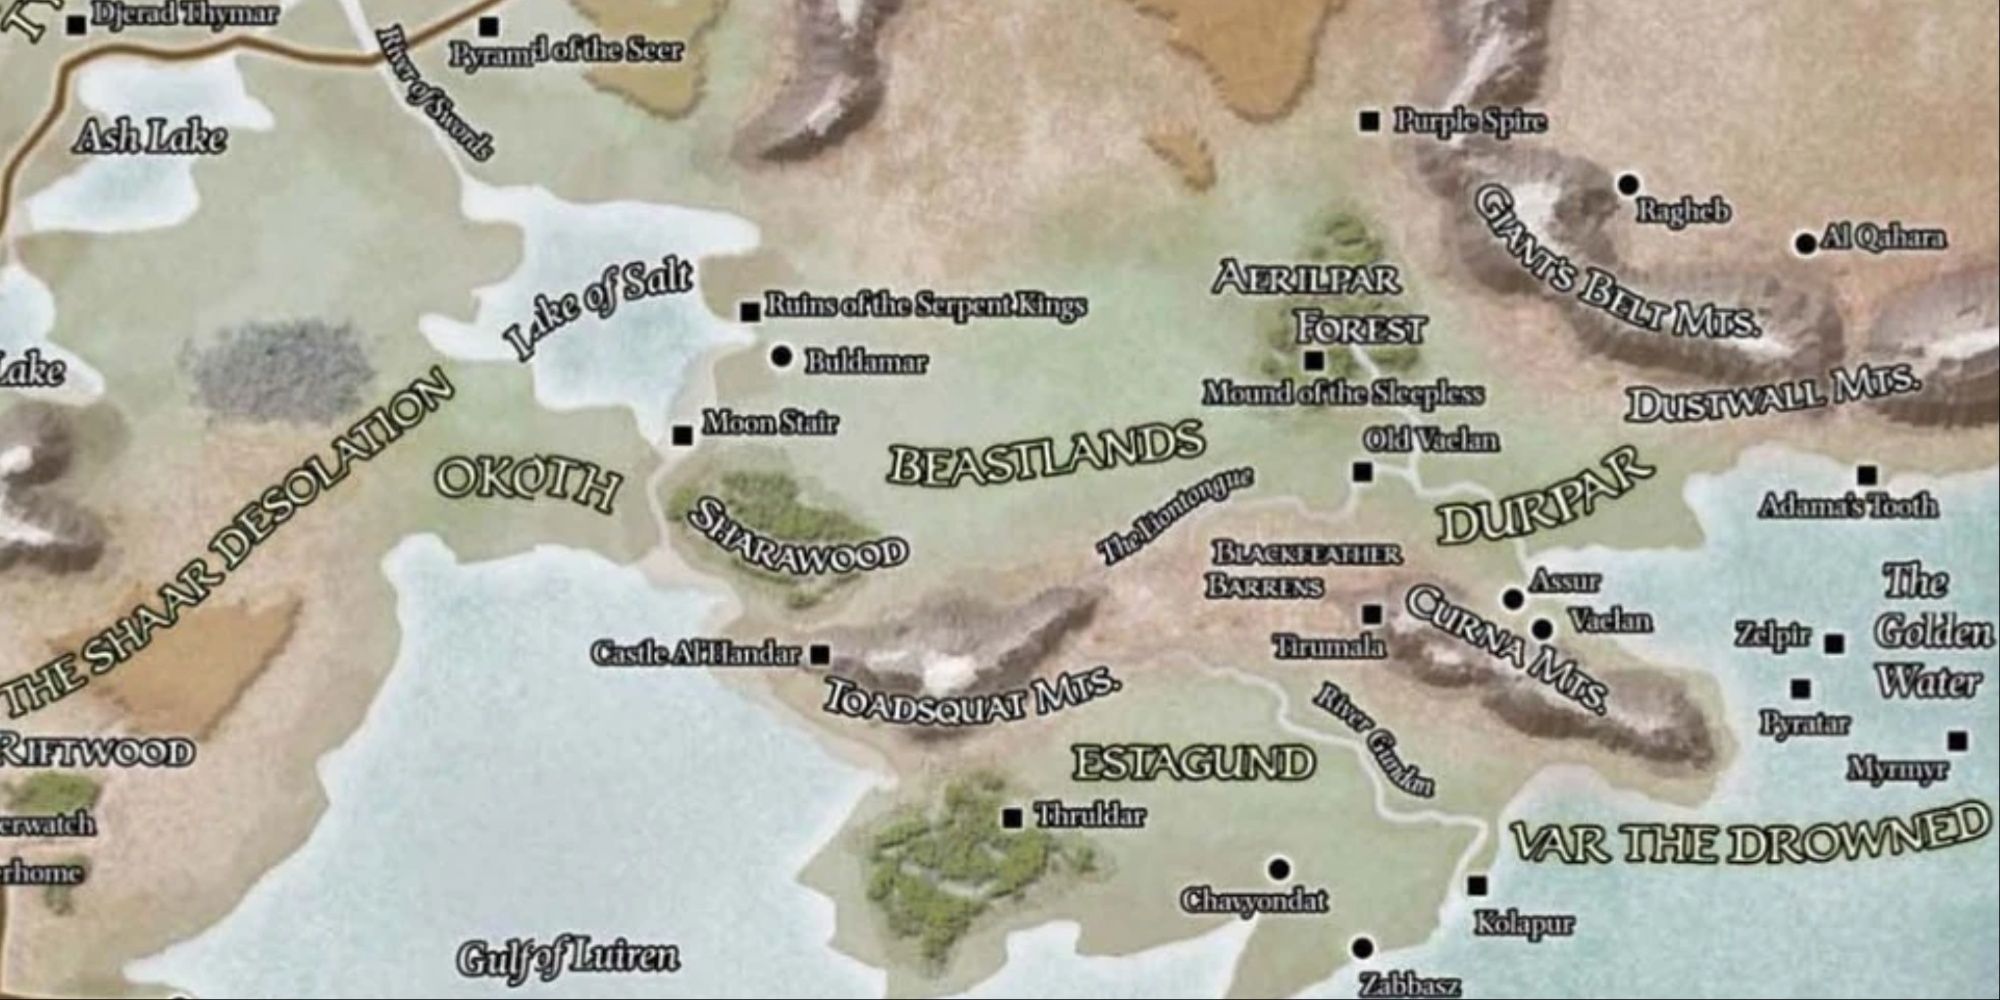 Map included in the Forgotten Realms Campaign Guide Rob Lazaretti